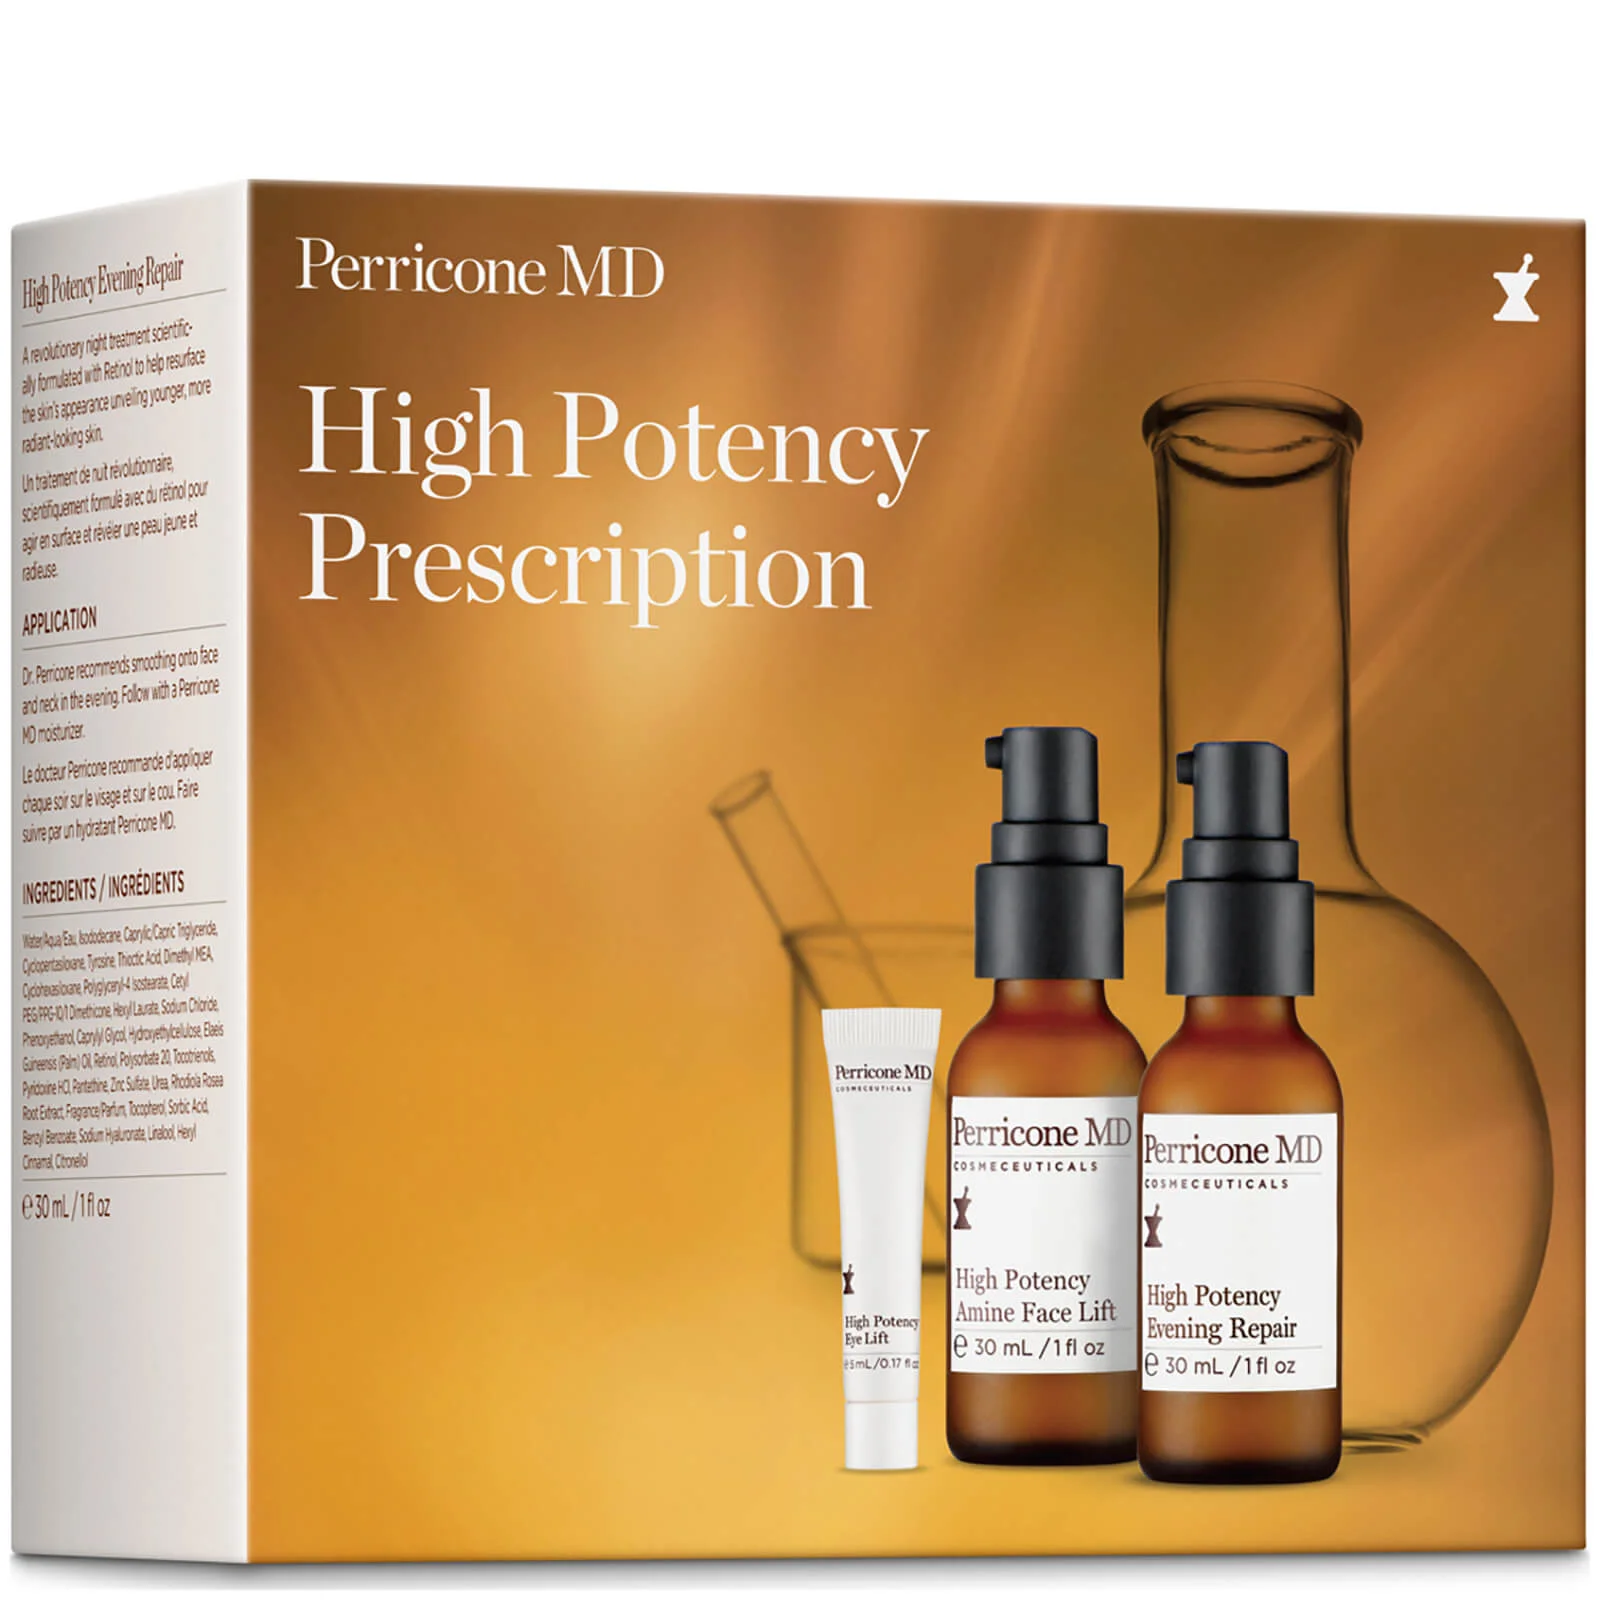 Perricone MD High Potency Prescription Image 1